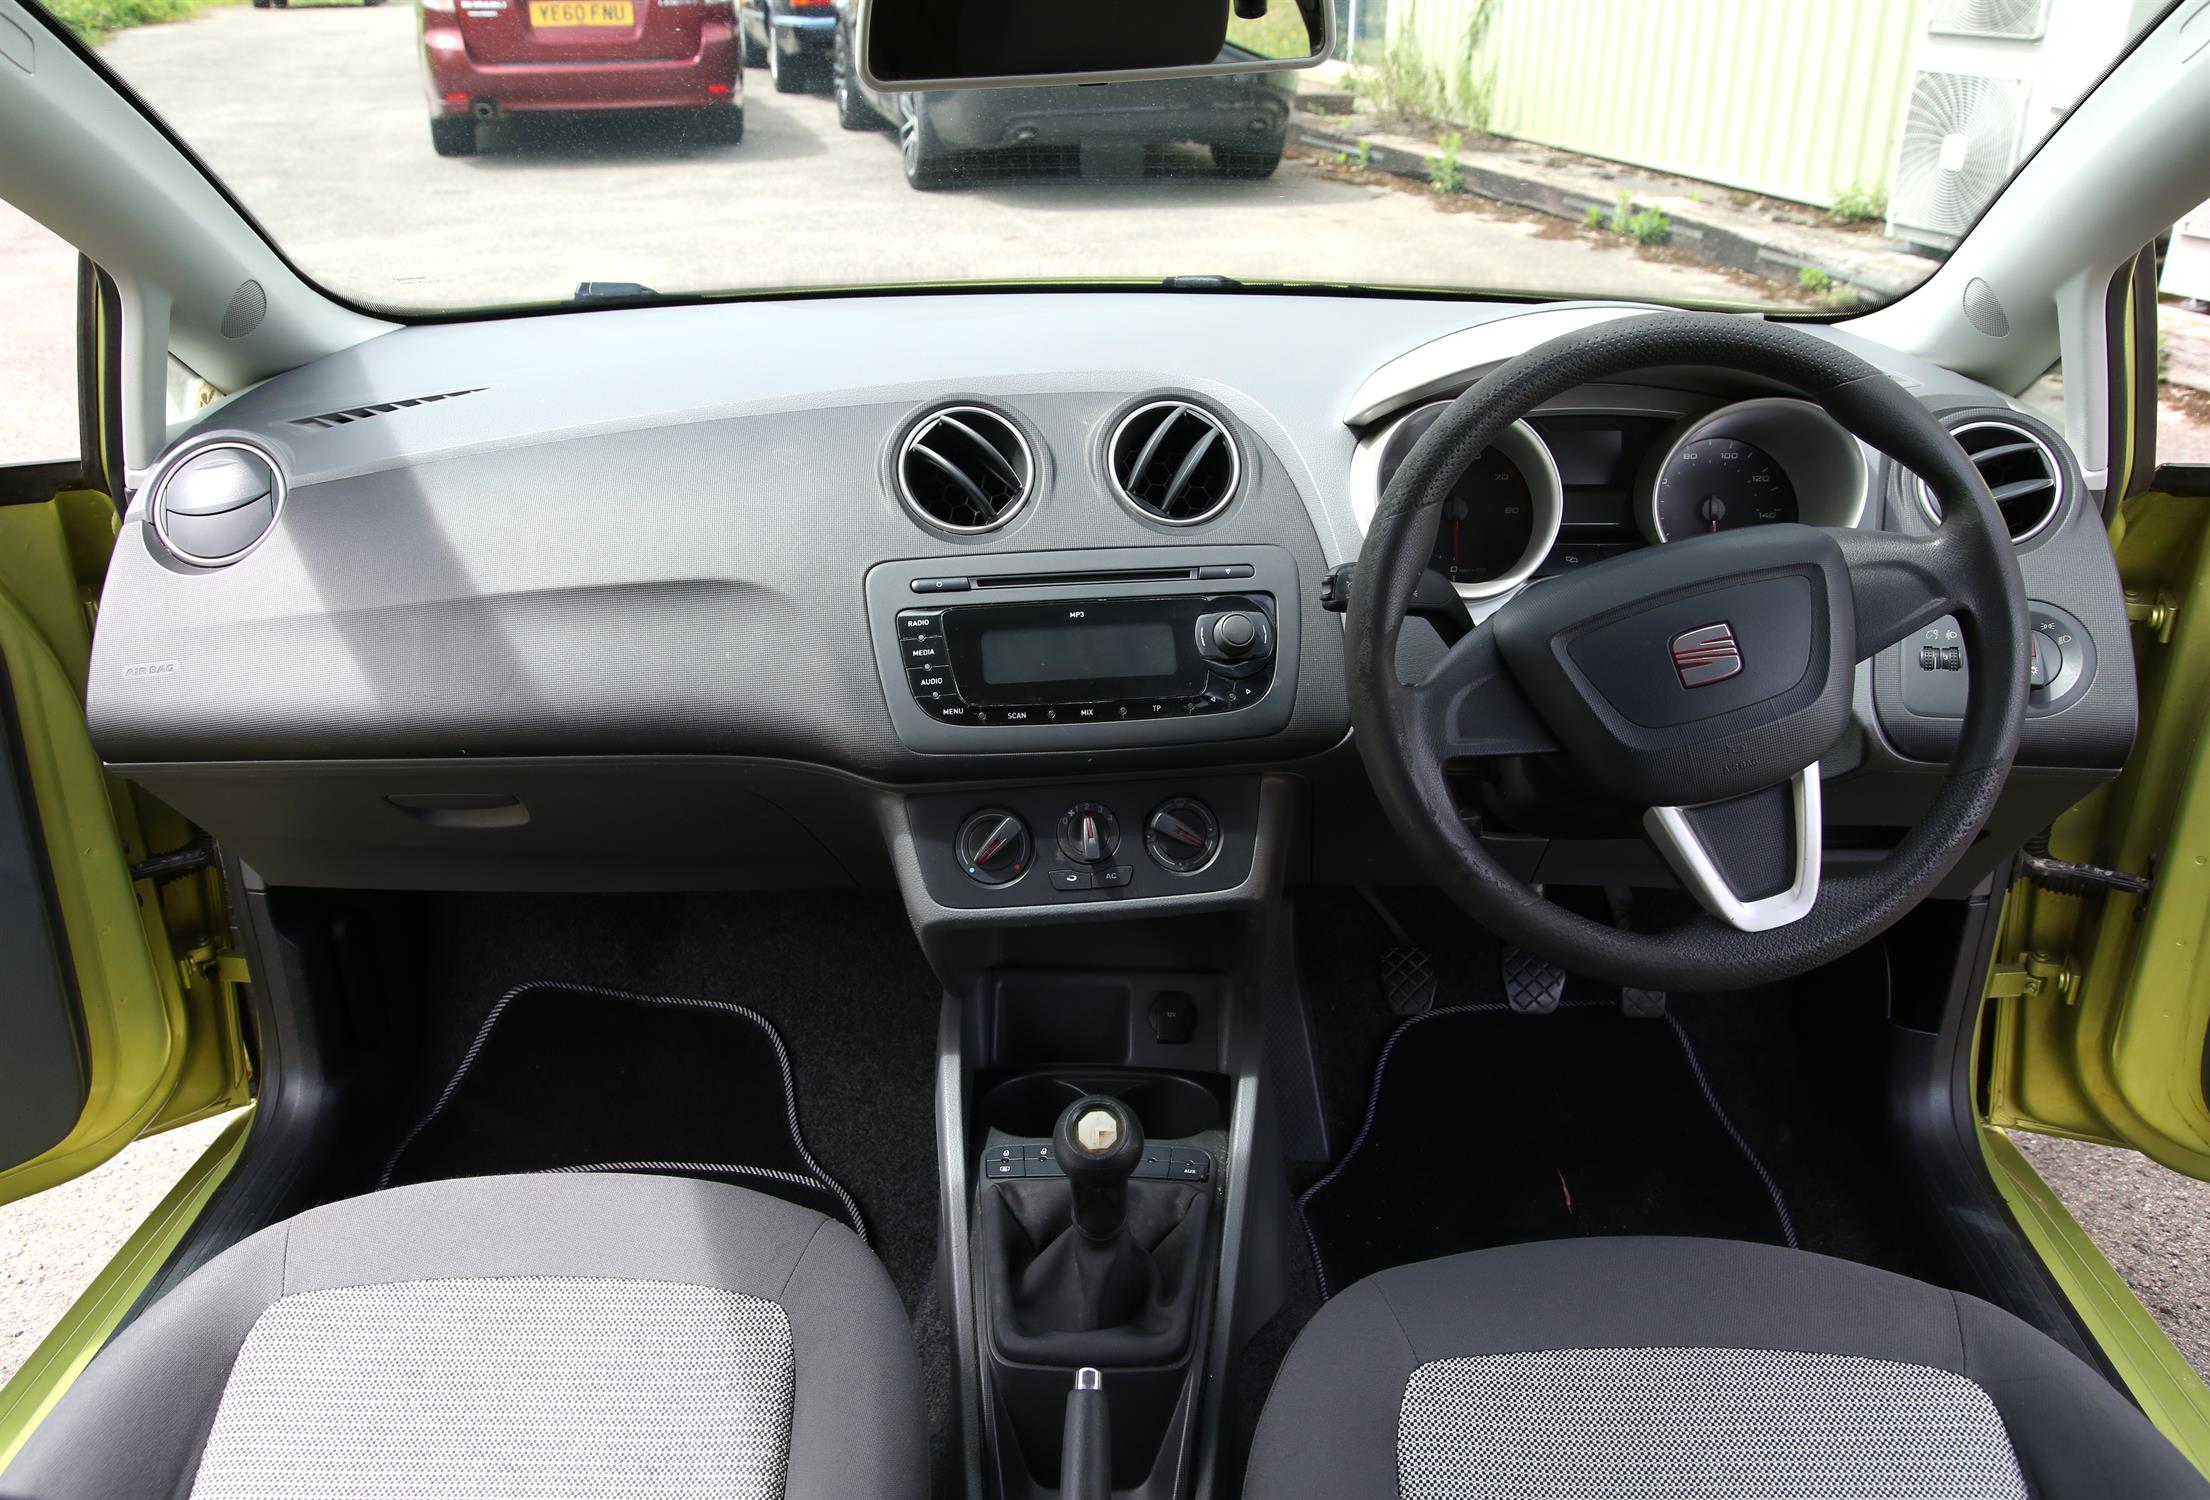 Seat Ibiza SE. Registration number KV59 EUF. First registered 02-10-2009. Three door Hatchback. - Image 4 of 10